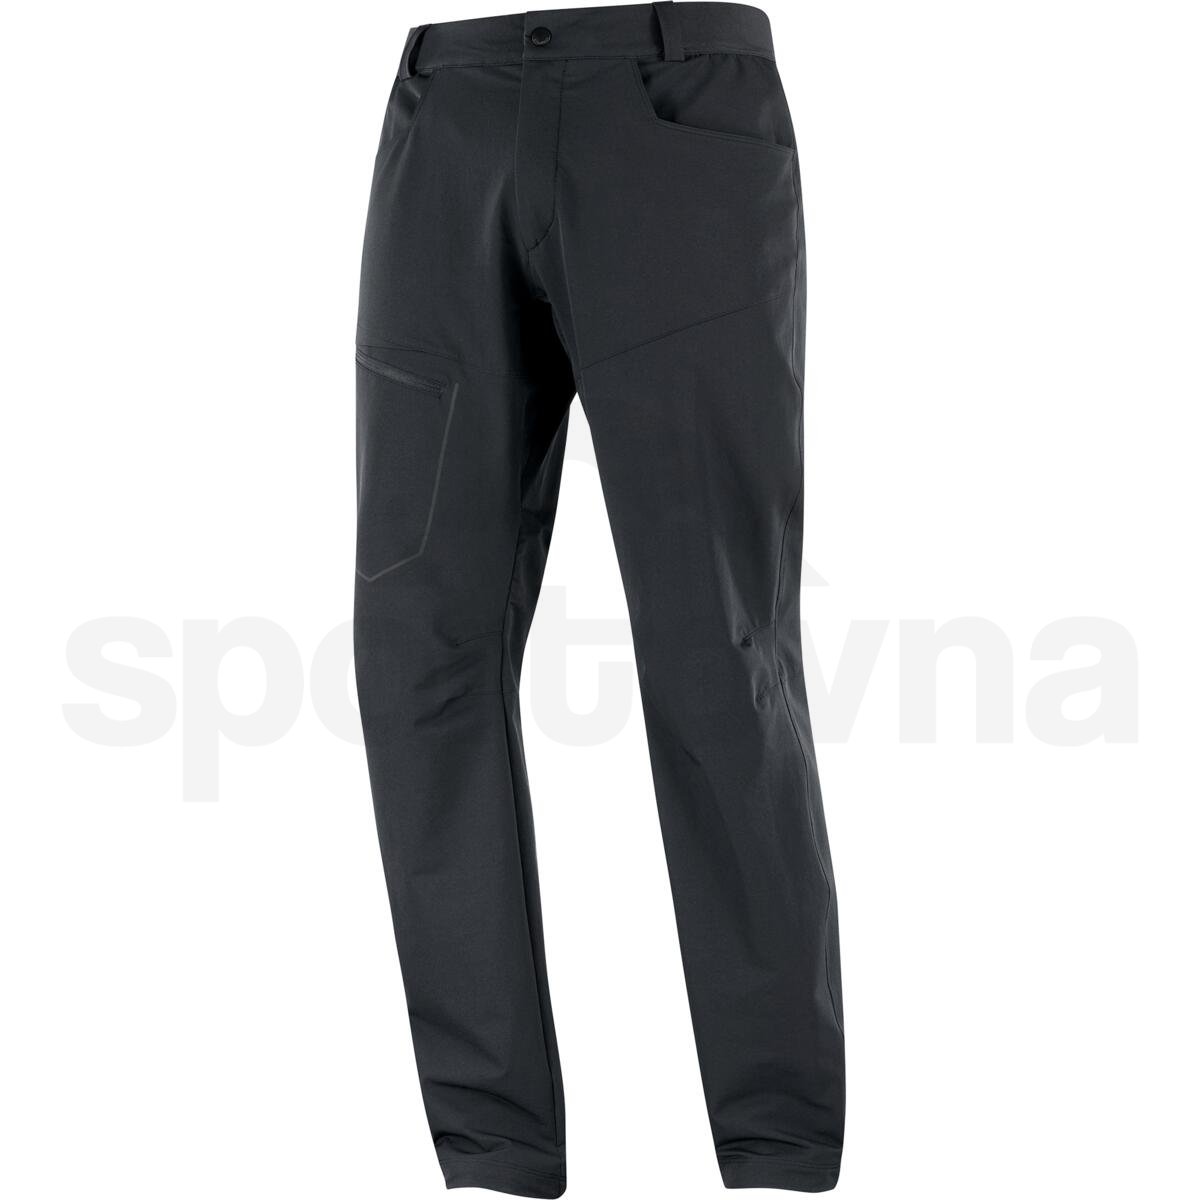 Kalhoty Salomon Wayfarer Warm Pants M - černá (standardní délka)